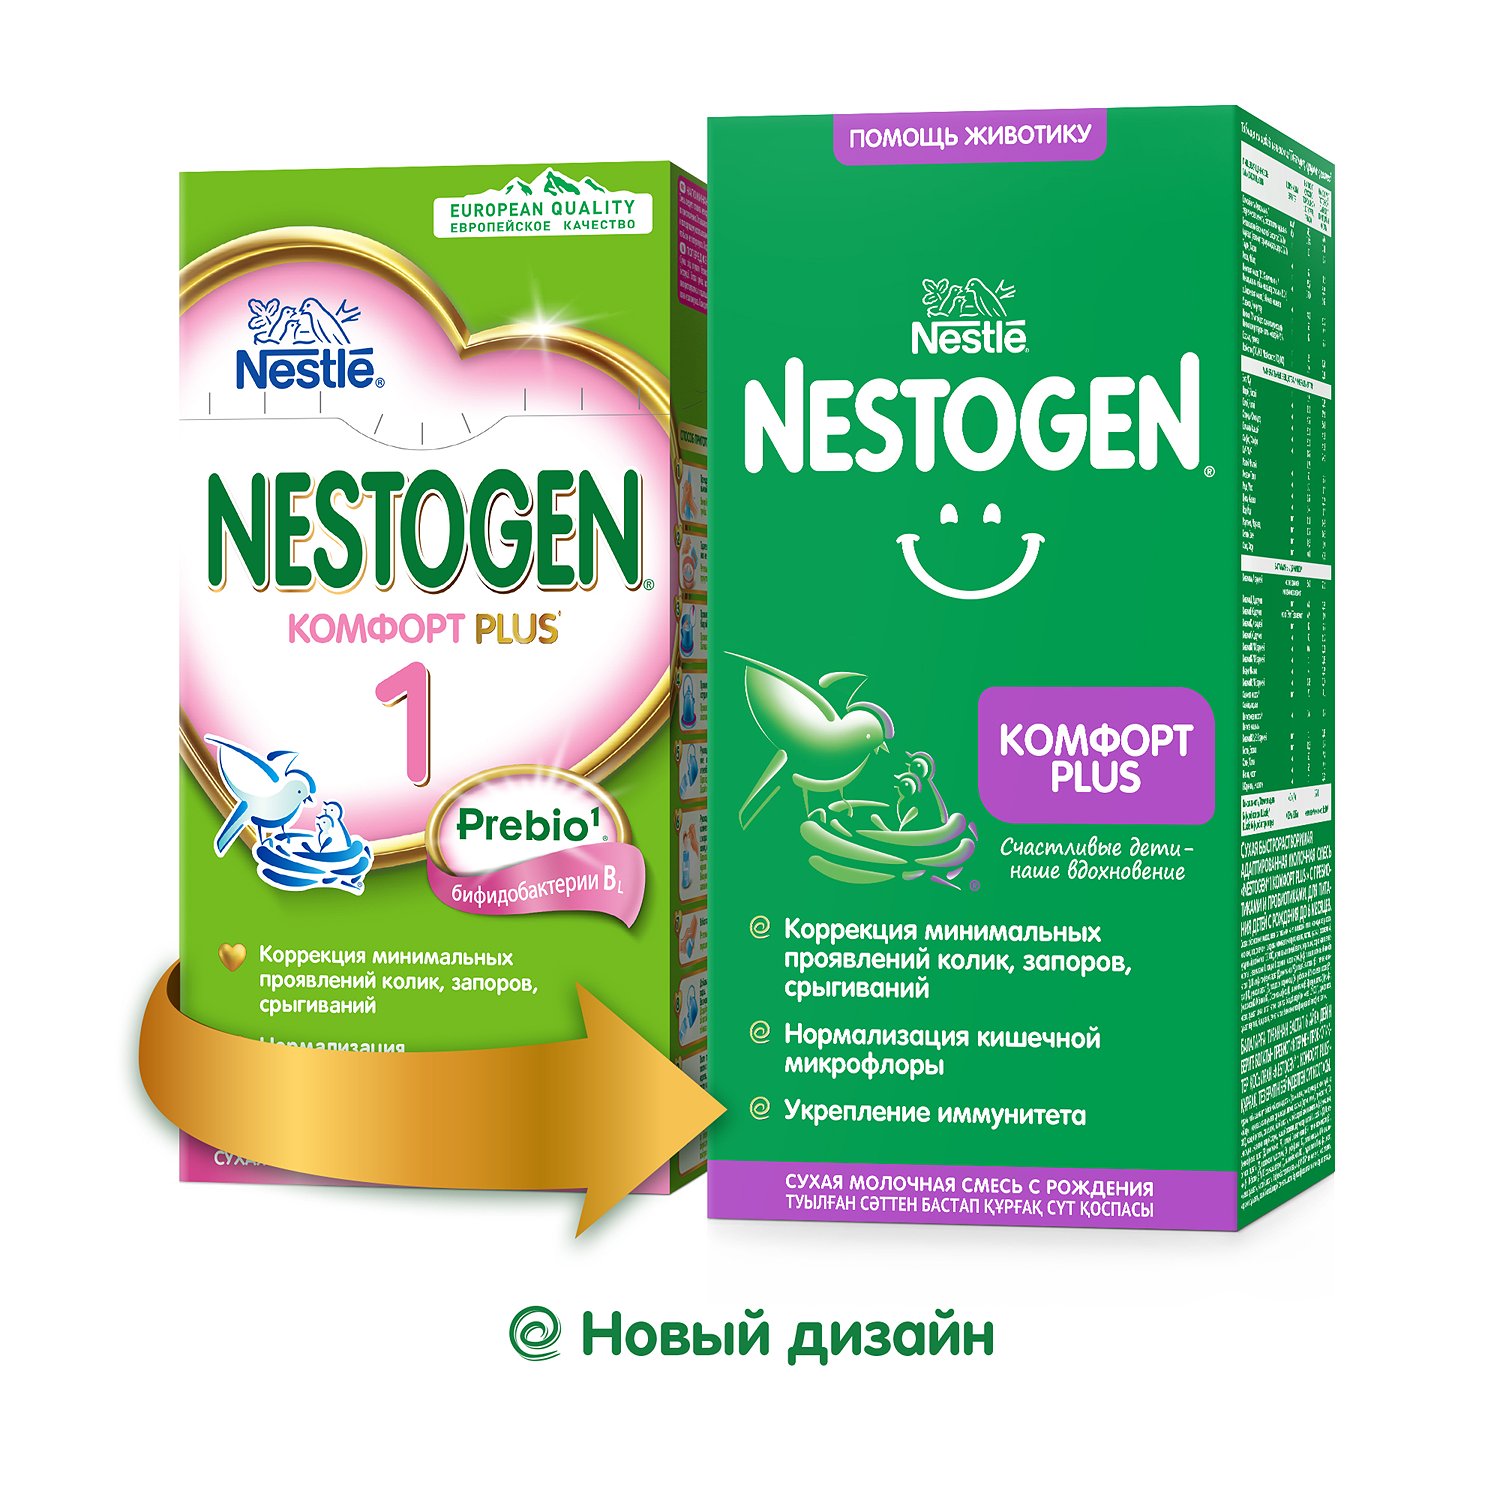 Нестожен с рождения. Смесь Нестожен Nestogen 1. Nestogen (Nestlé) 1 комфорт Plus. Смесь Nestogen (Nestlé) 1 (с рождения) 350 г. Нестожен 1 смесь для новорожденных.